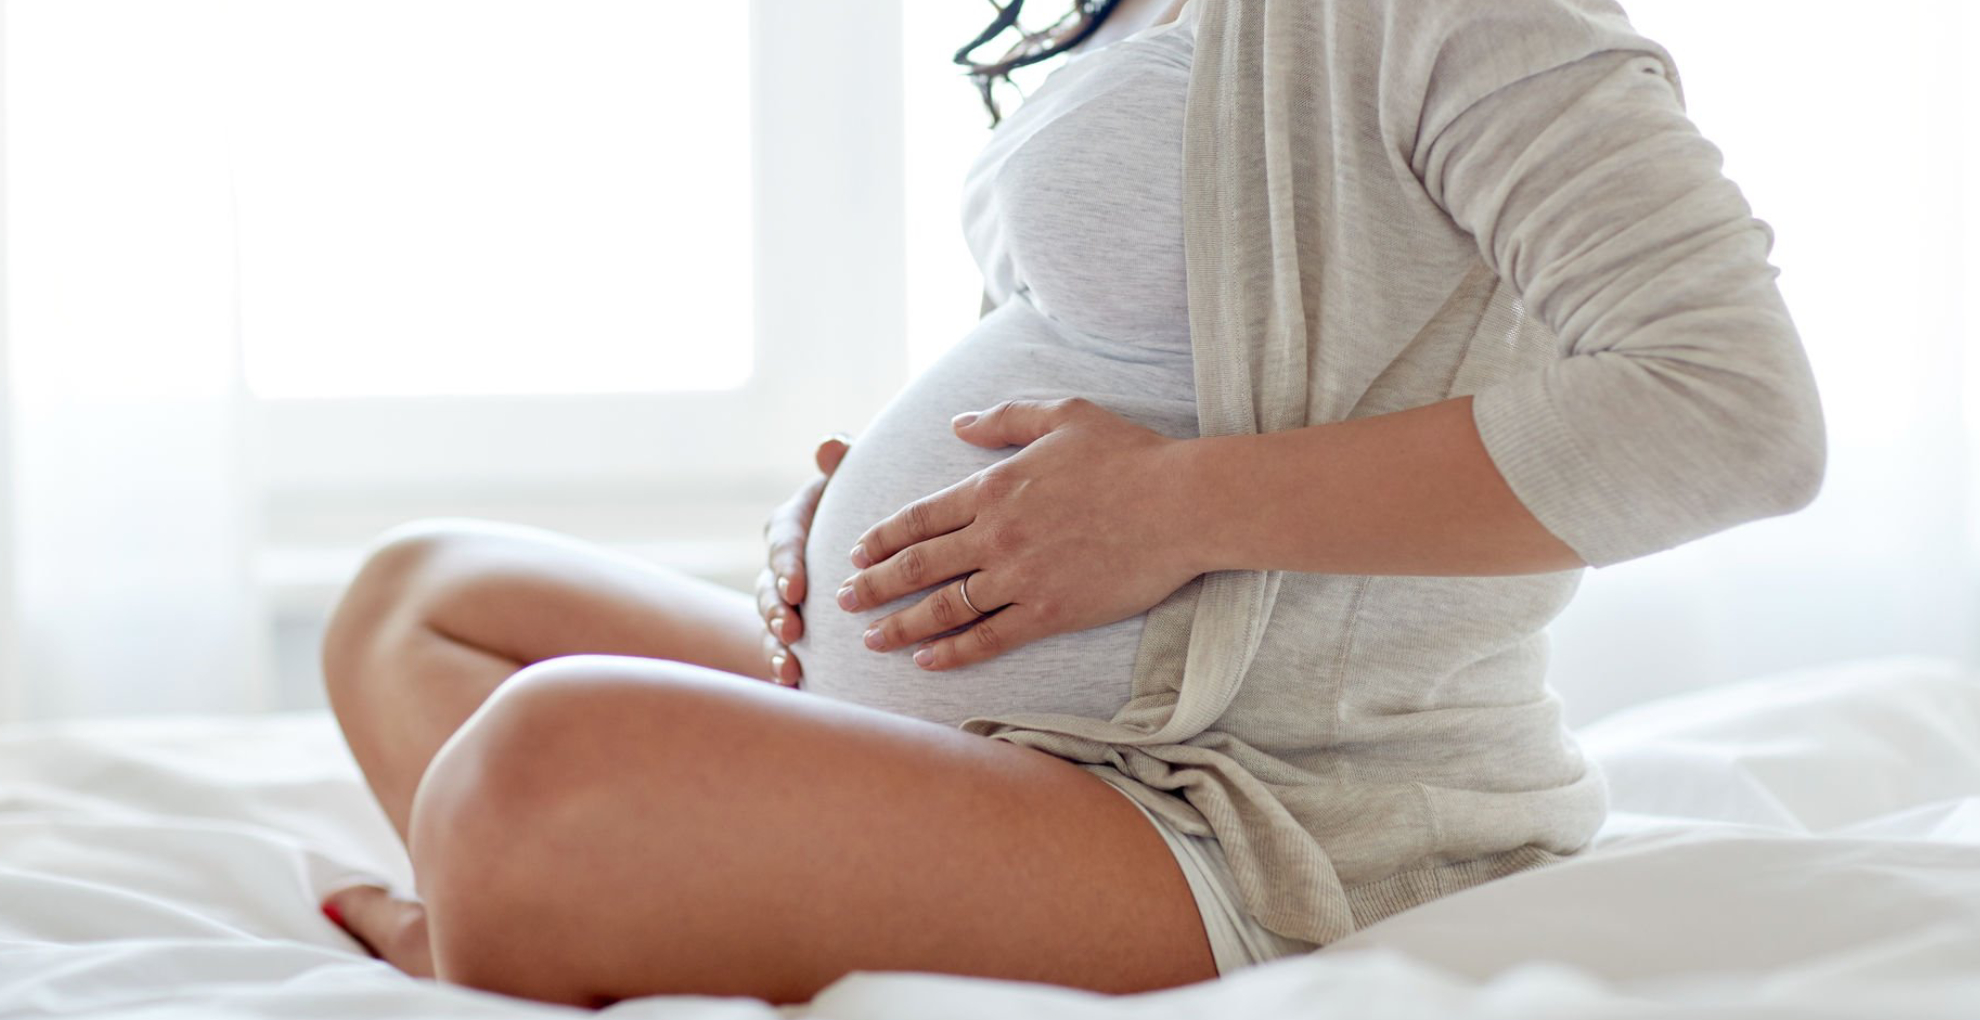 Pregnancy Tips: प्रेग्नेंसी के शुरुआती 3 महीने में जरूर बरतें ये सावधानियां, नहीं तो बना रहेगा अबॉर्शन का खतरा